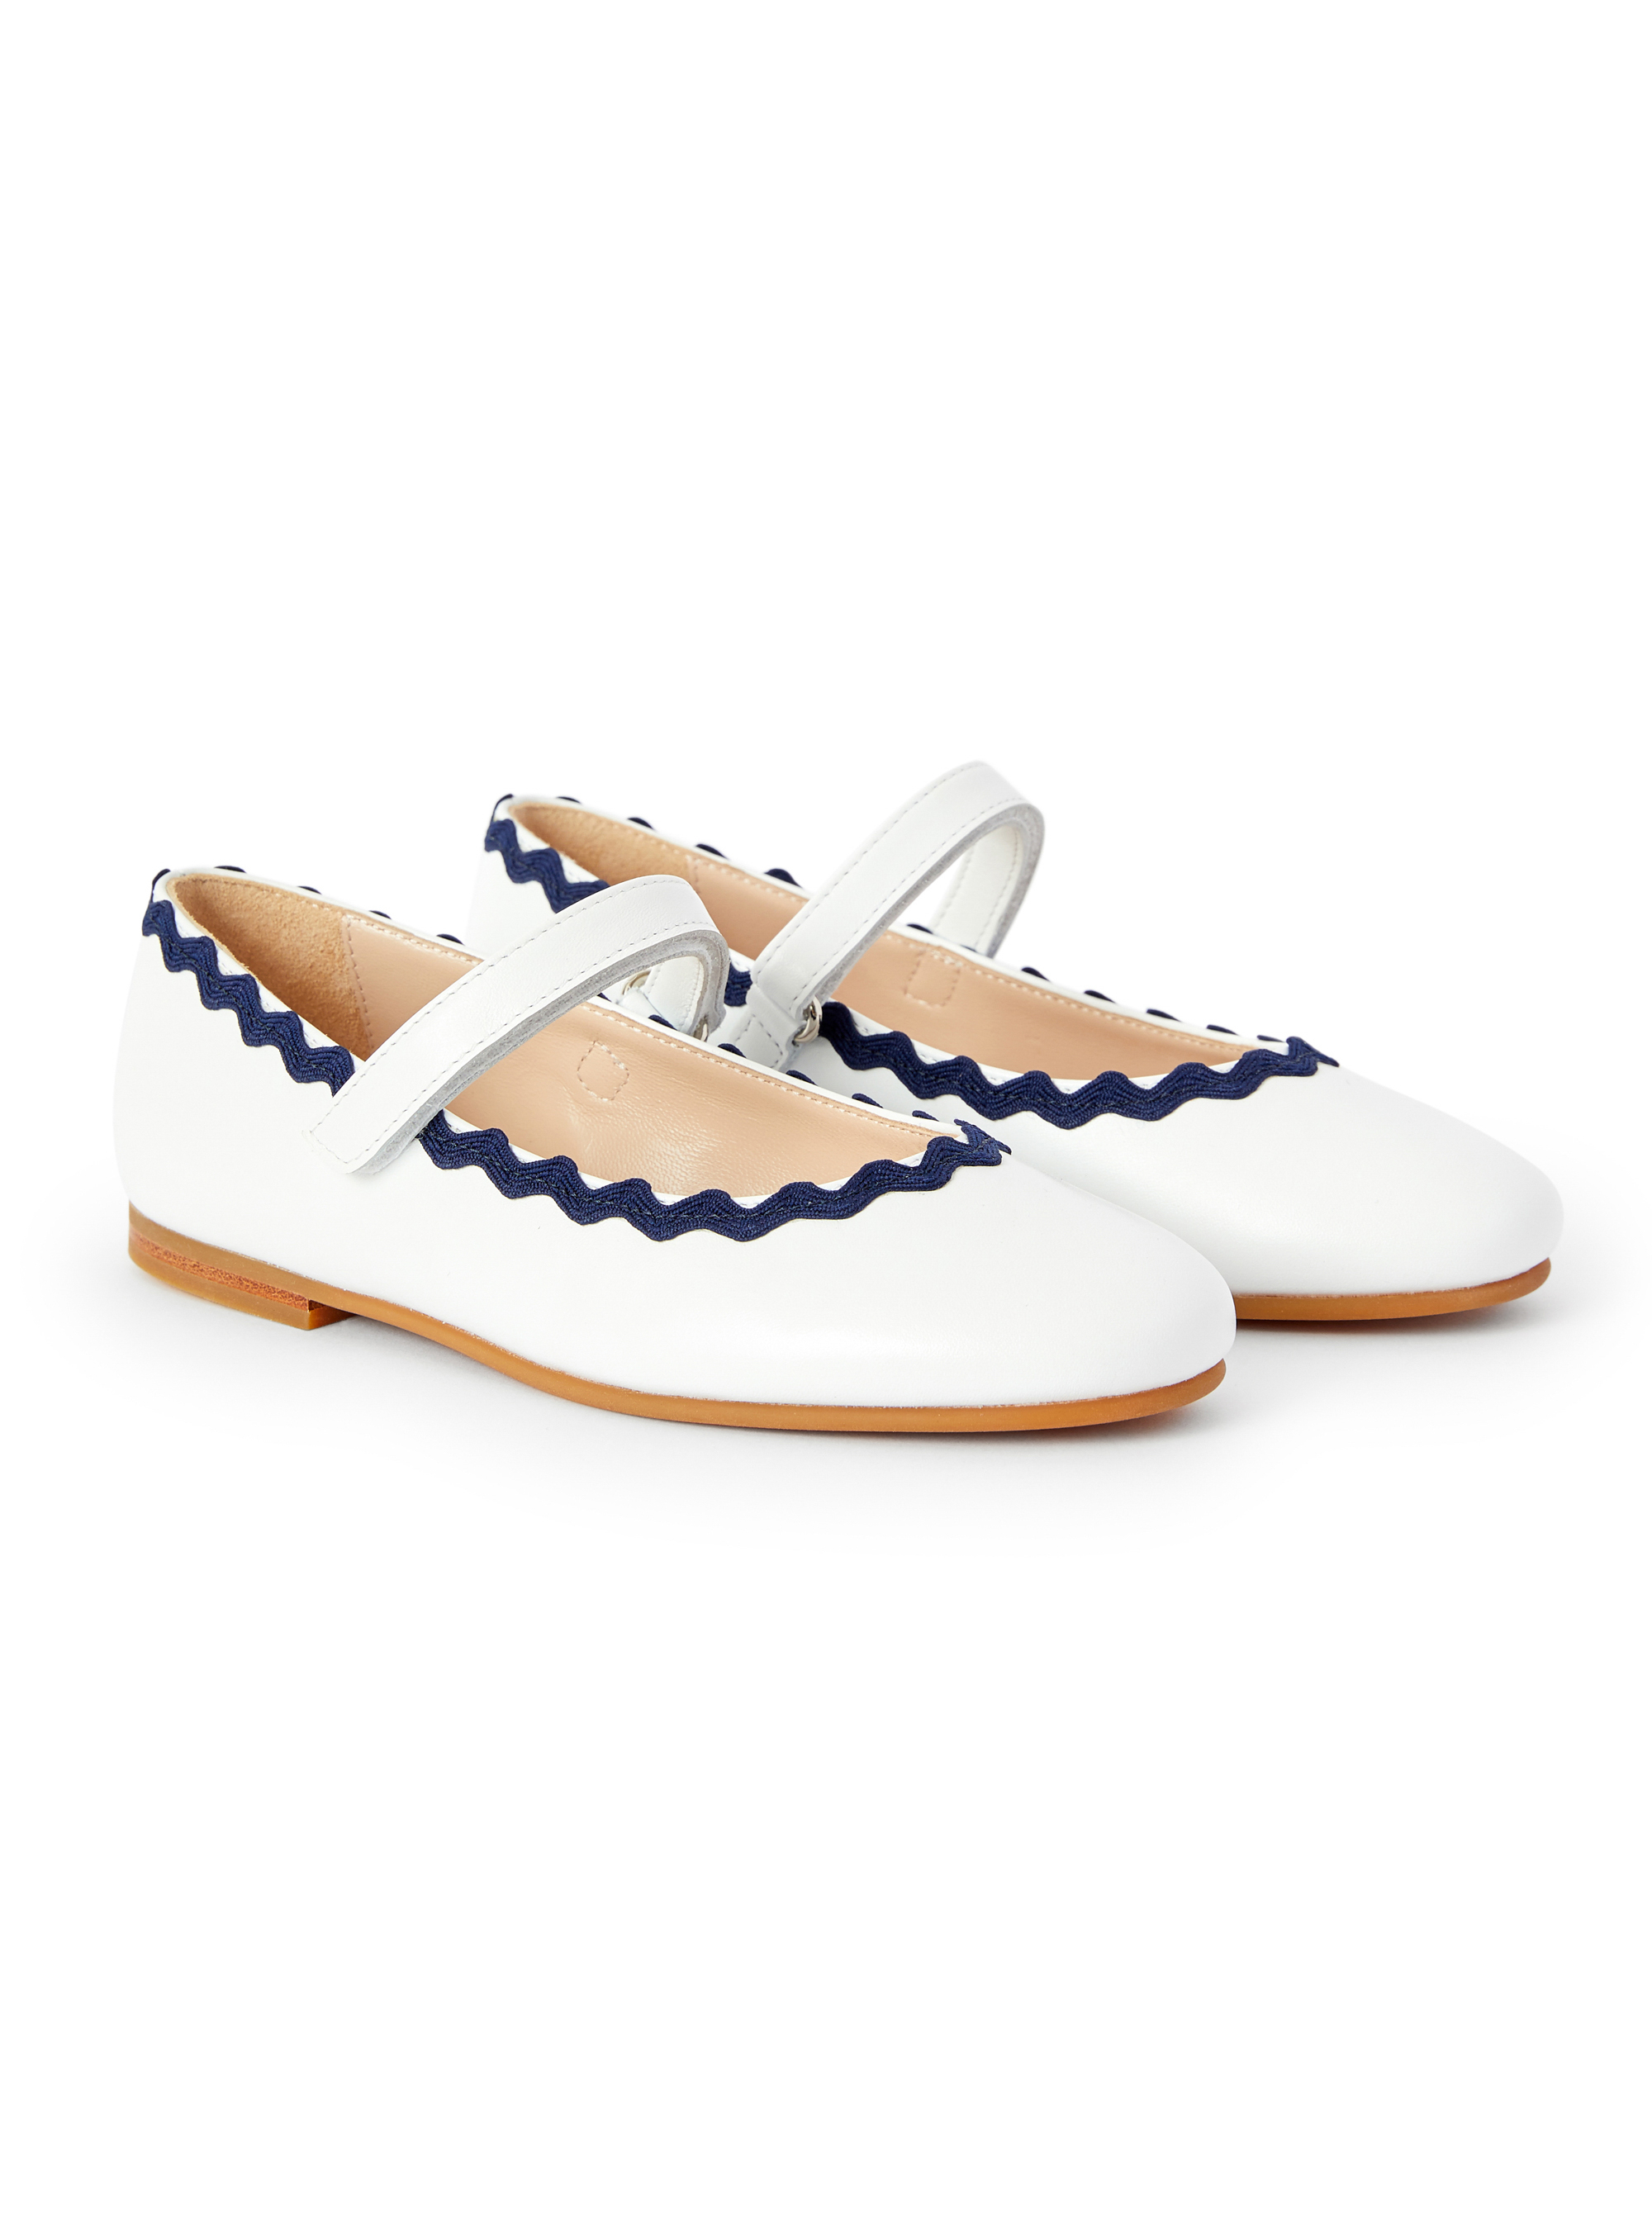 Chaussures plates blanches avec profilé bleu - Chaussures - Il Gufo